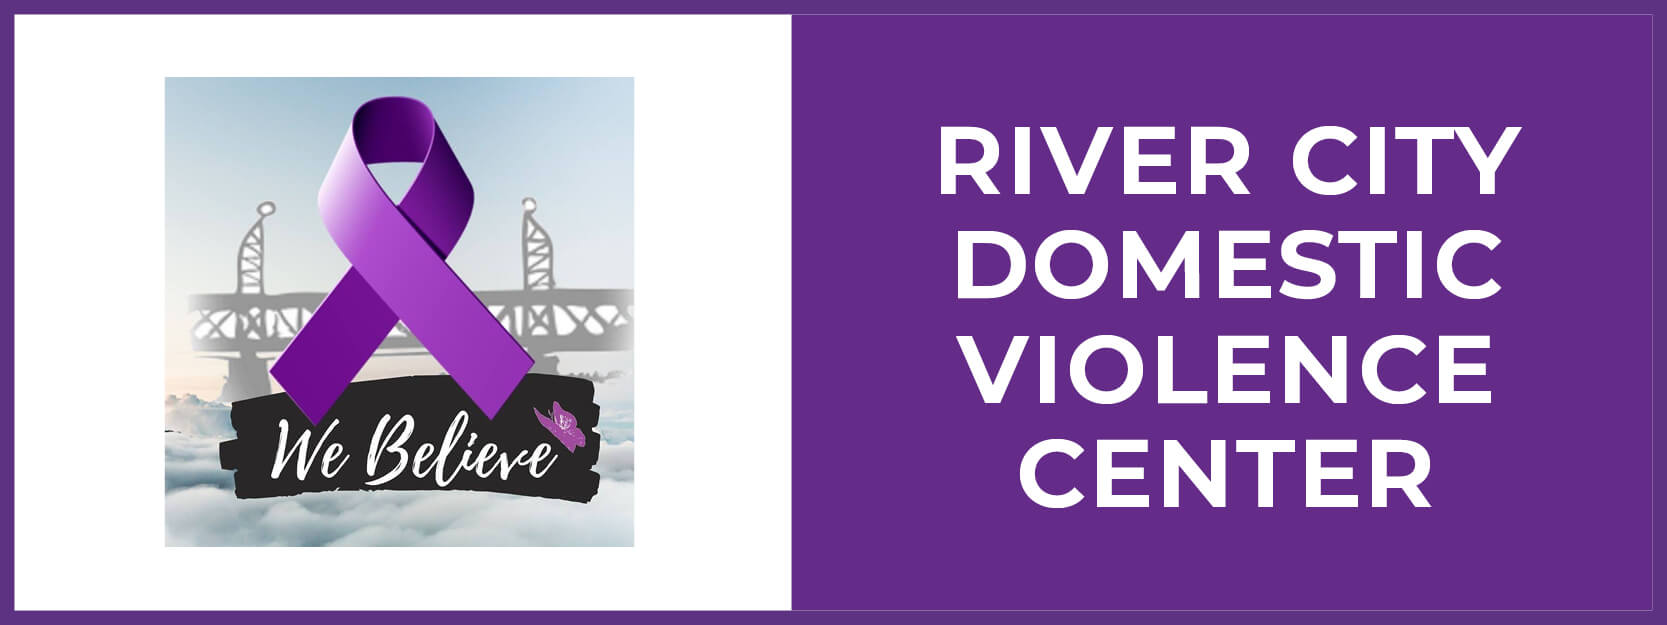 River City Domestic Violence Center button